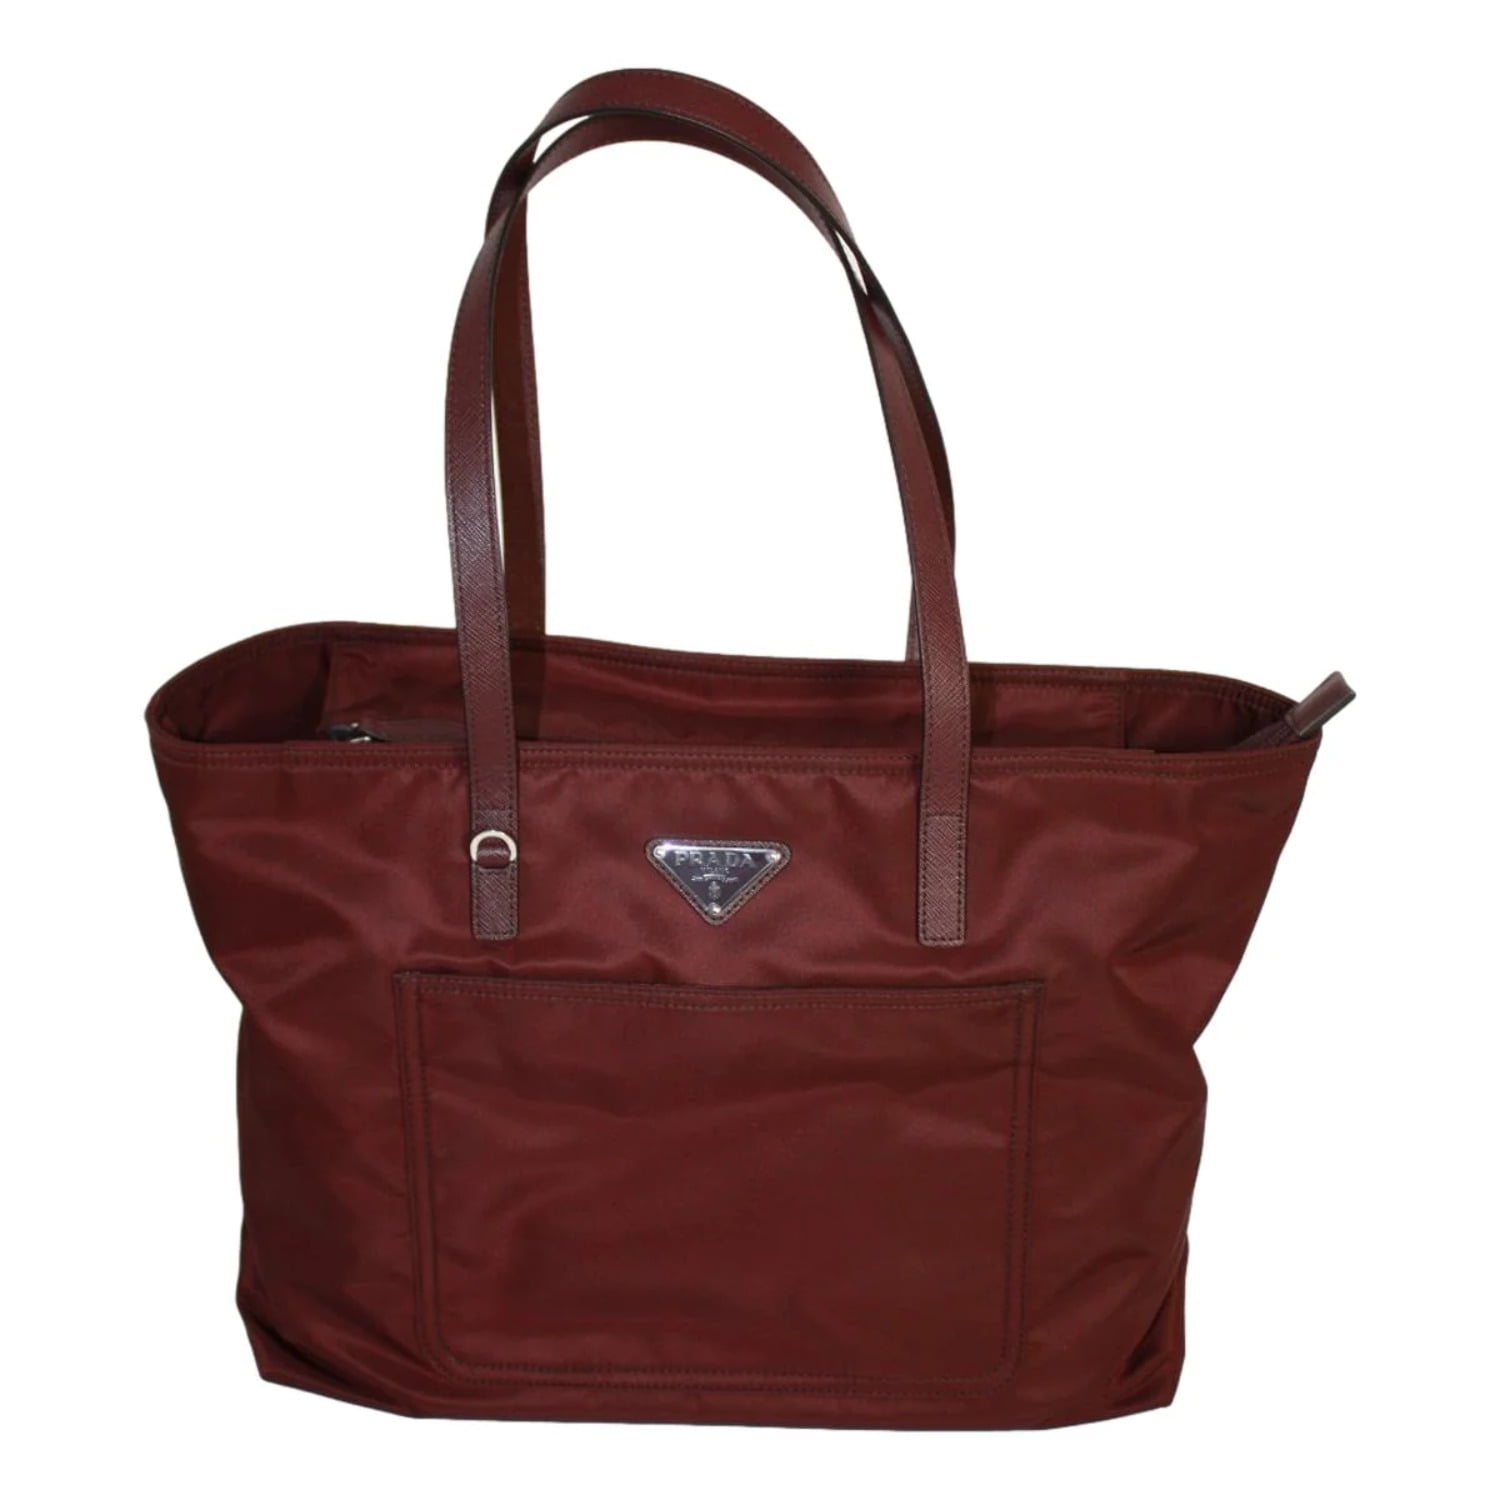 Medium Vela Leather Shoulder Bag In Brown